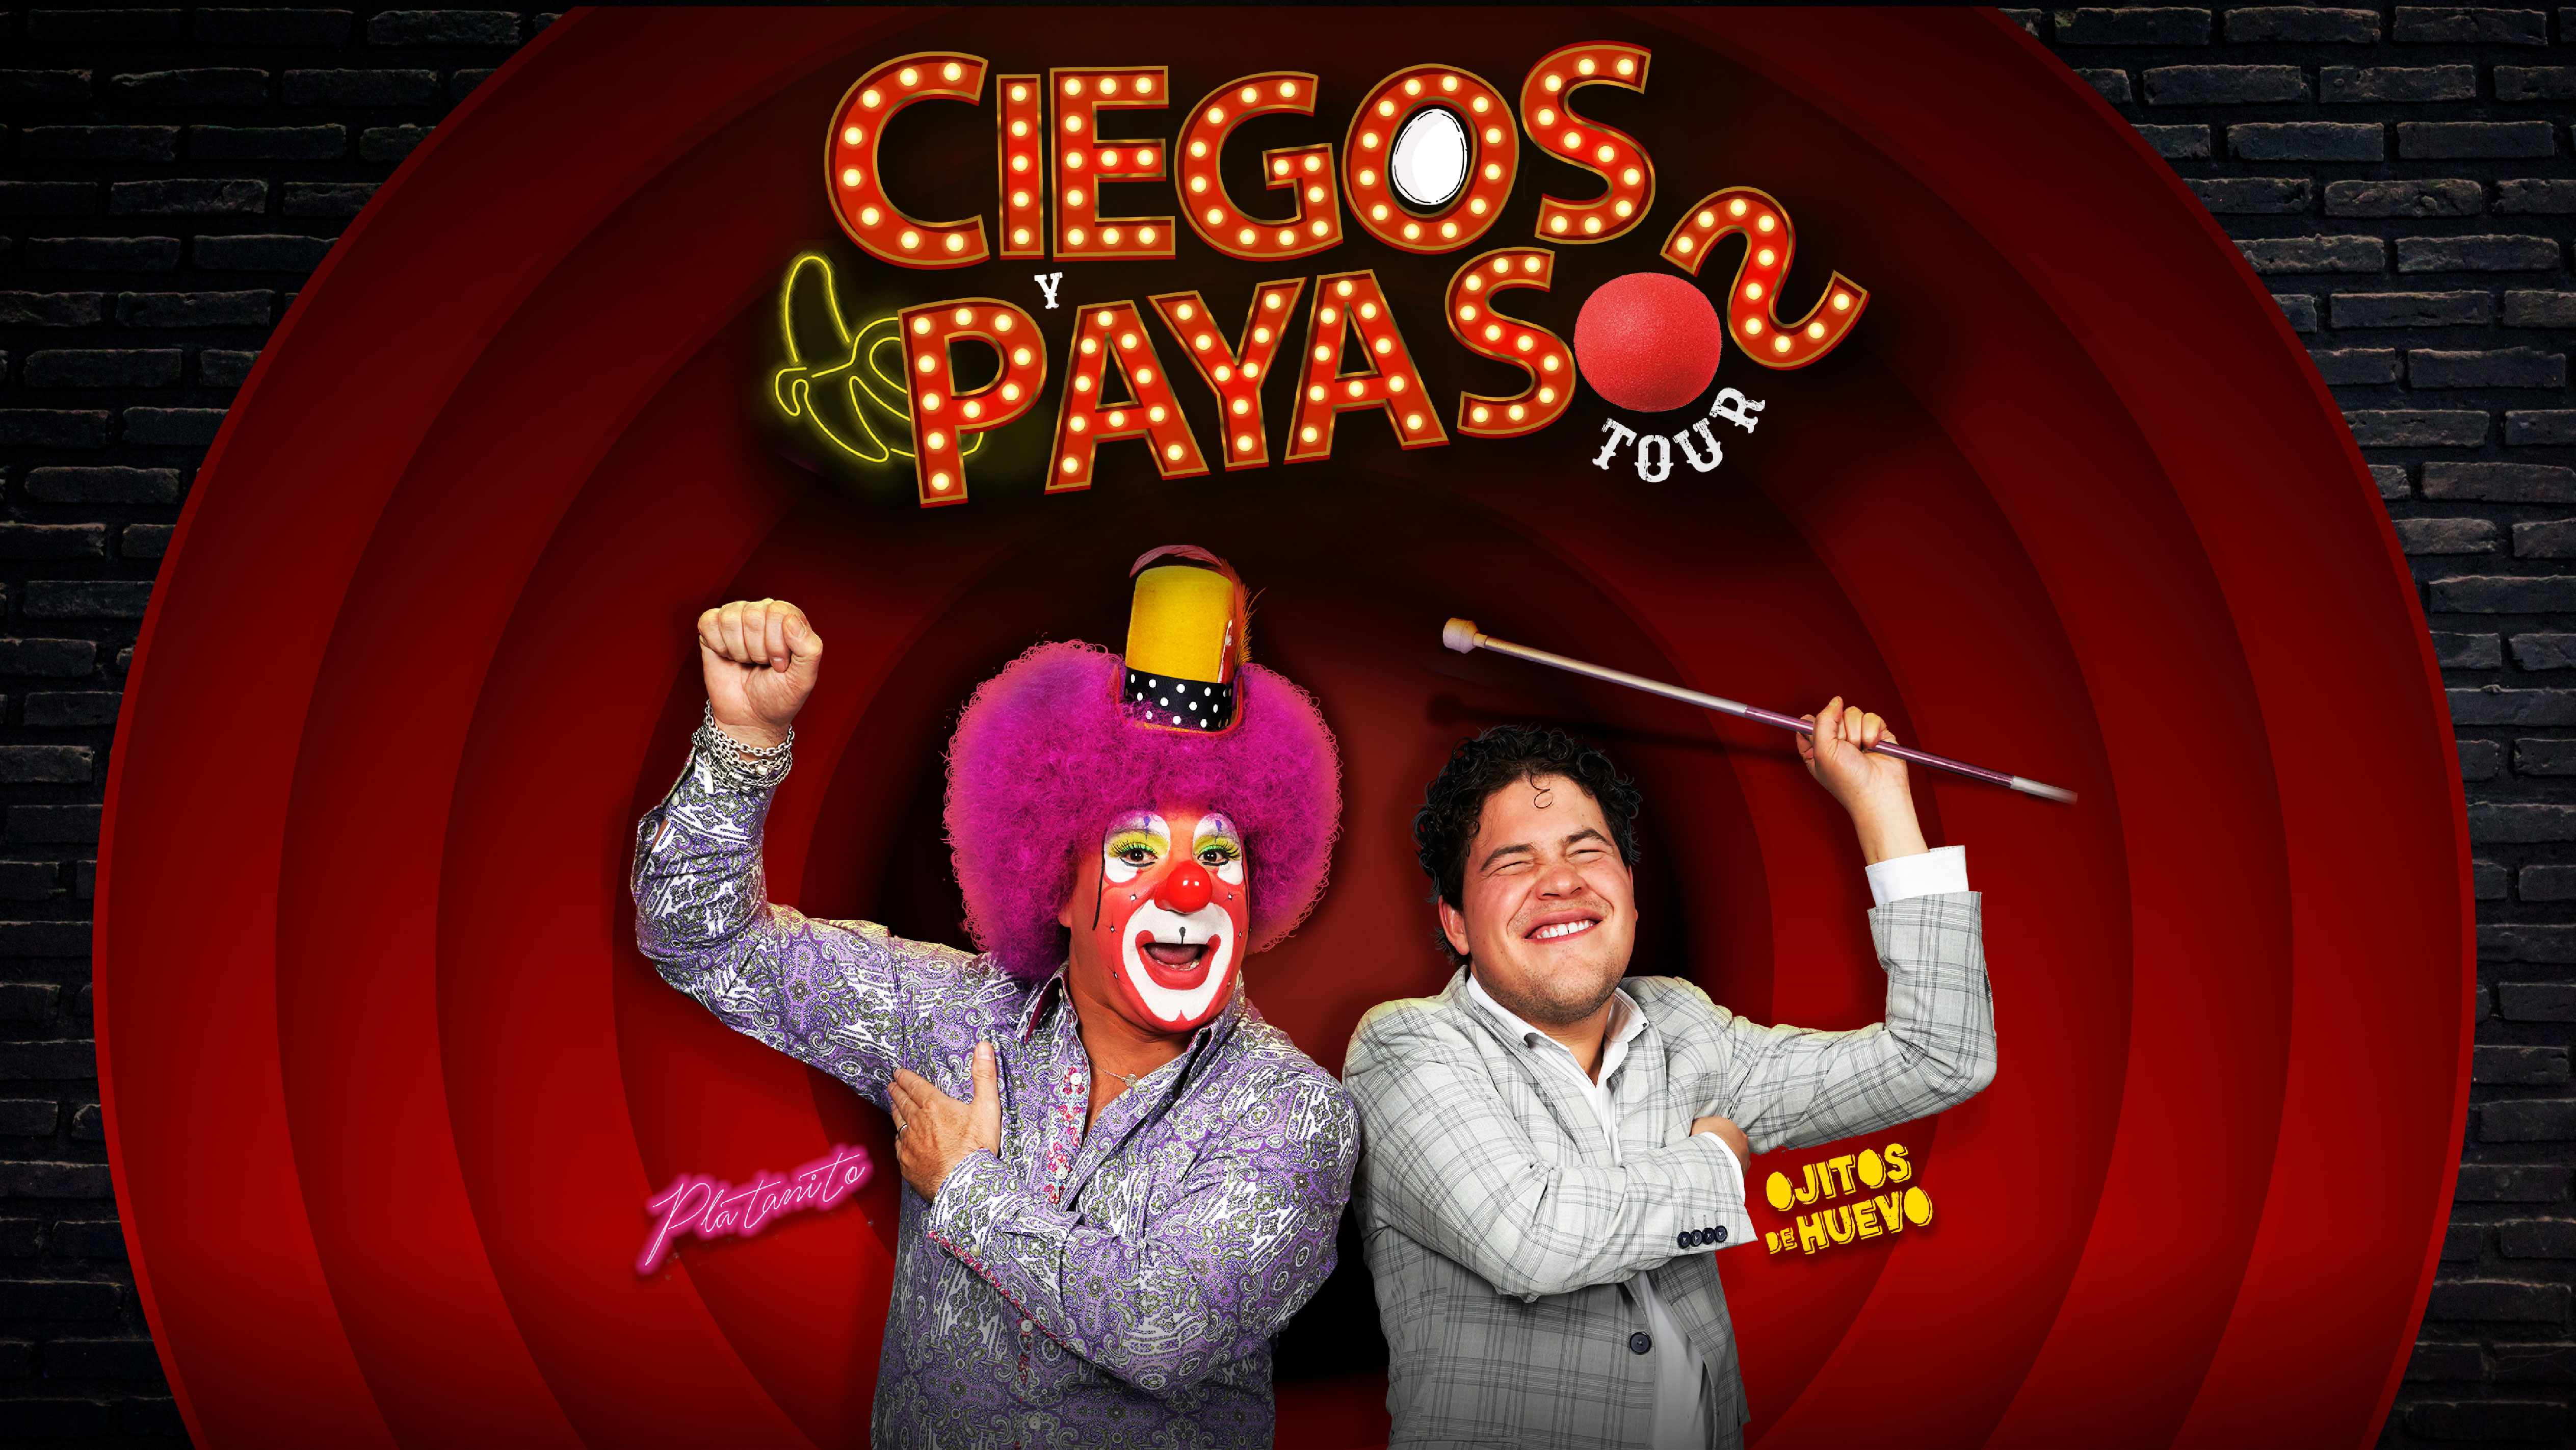 Ciegos y Payasos Platanito Show & Alexis Ojitos de Huevo